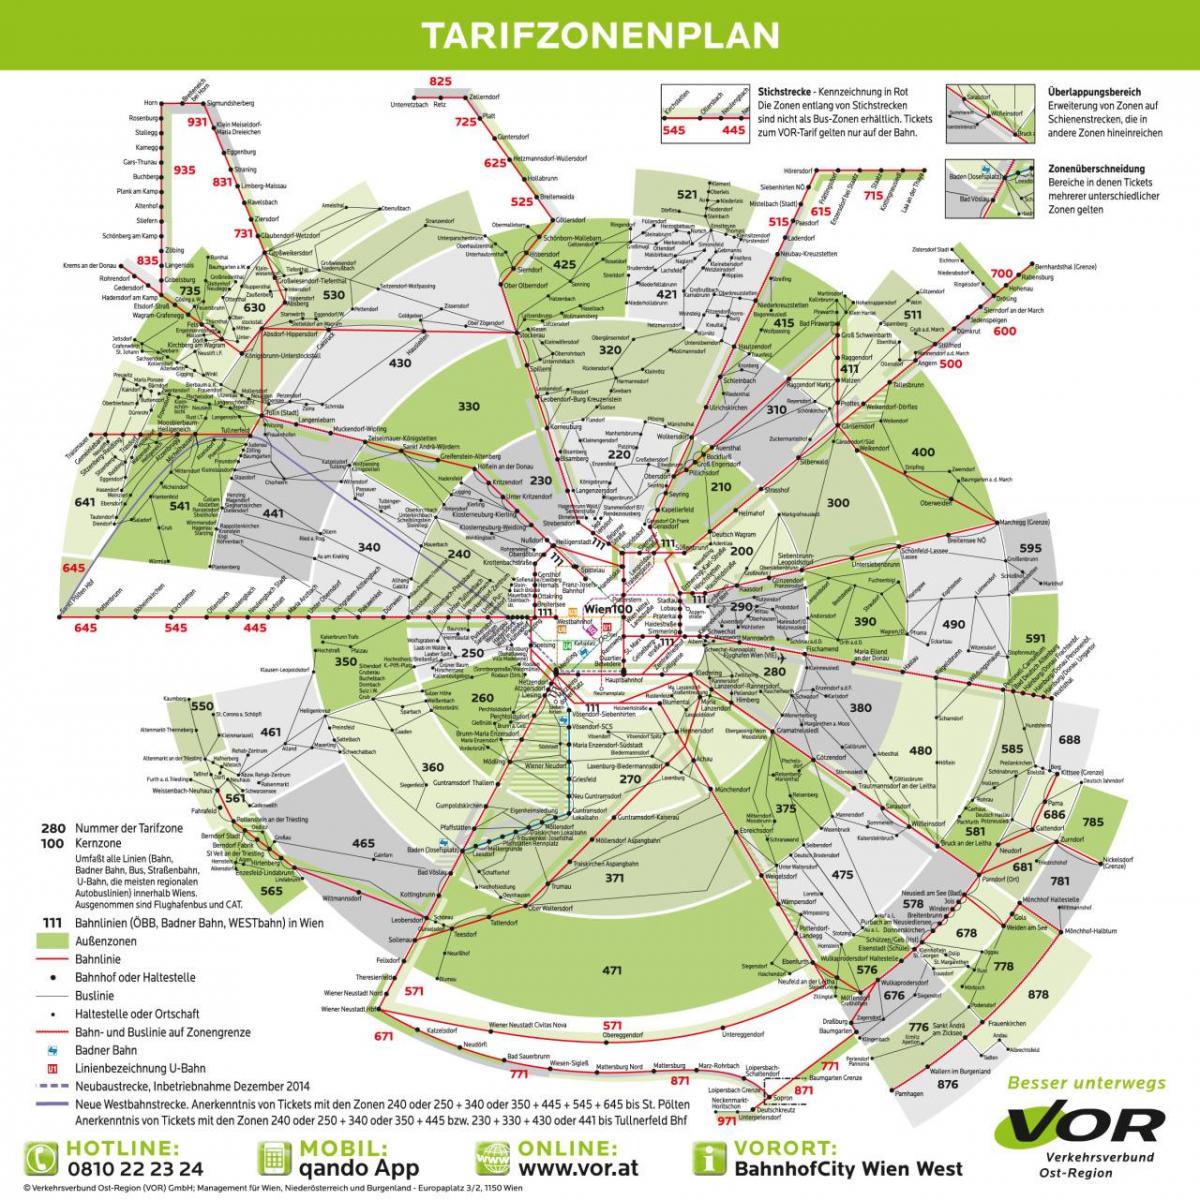 Mappa di Vienna zone di trasporto